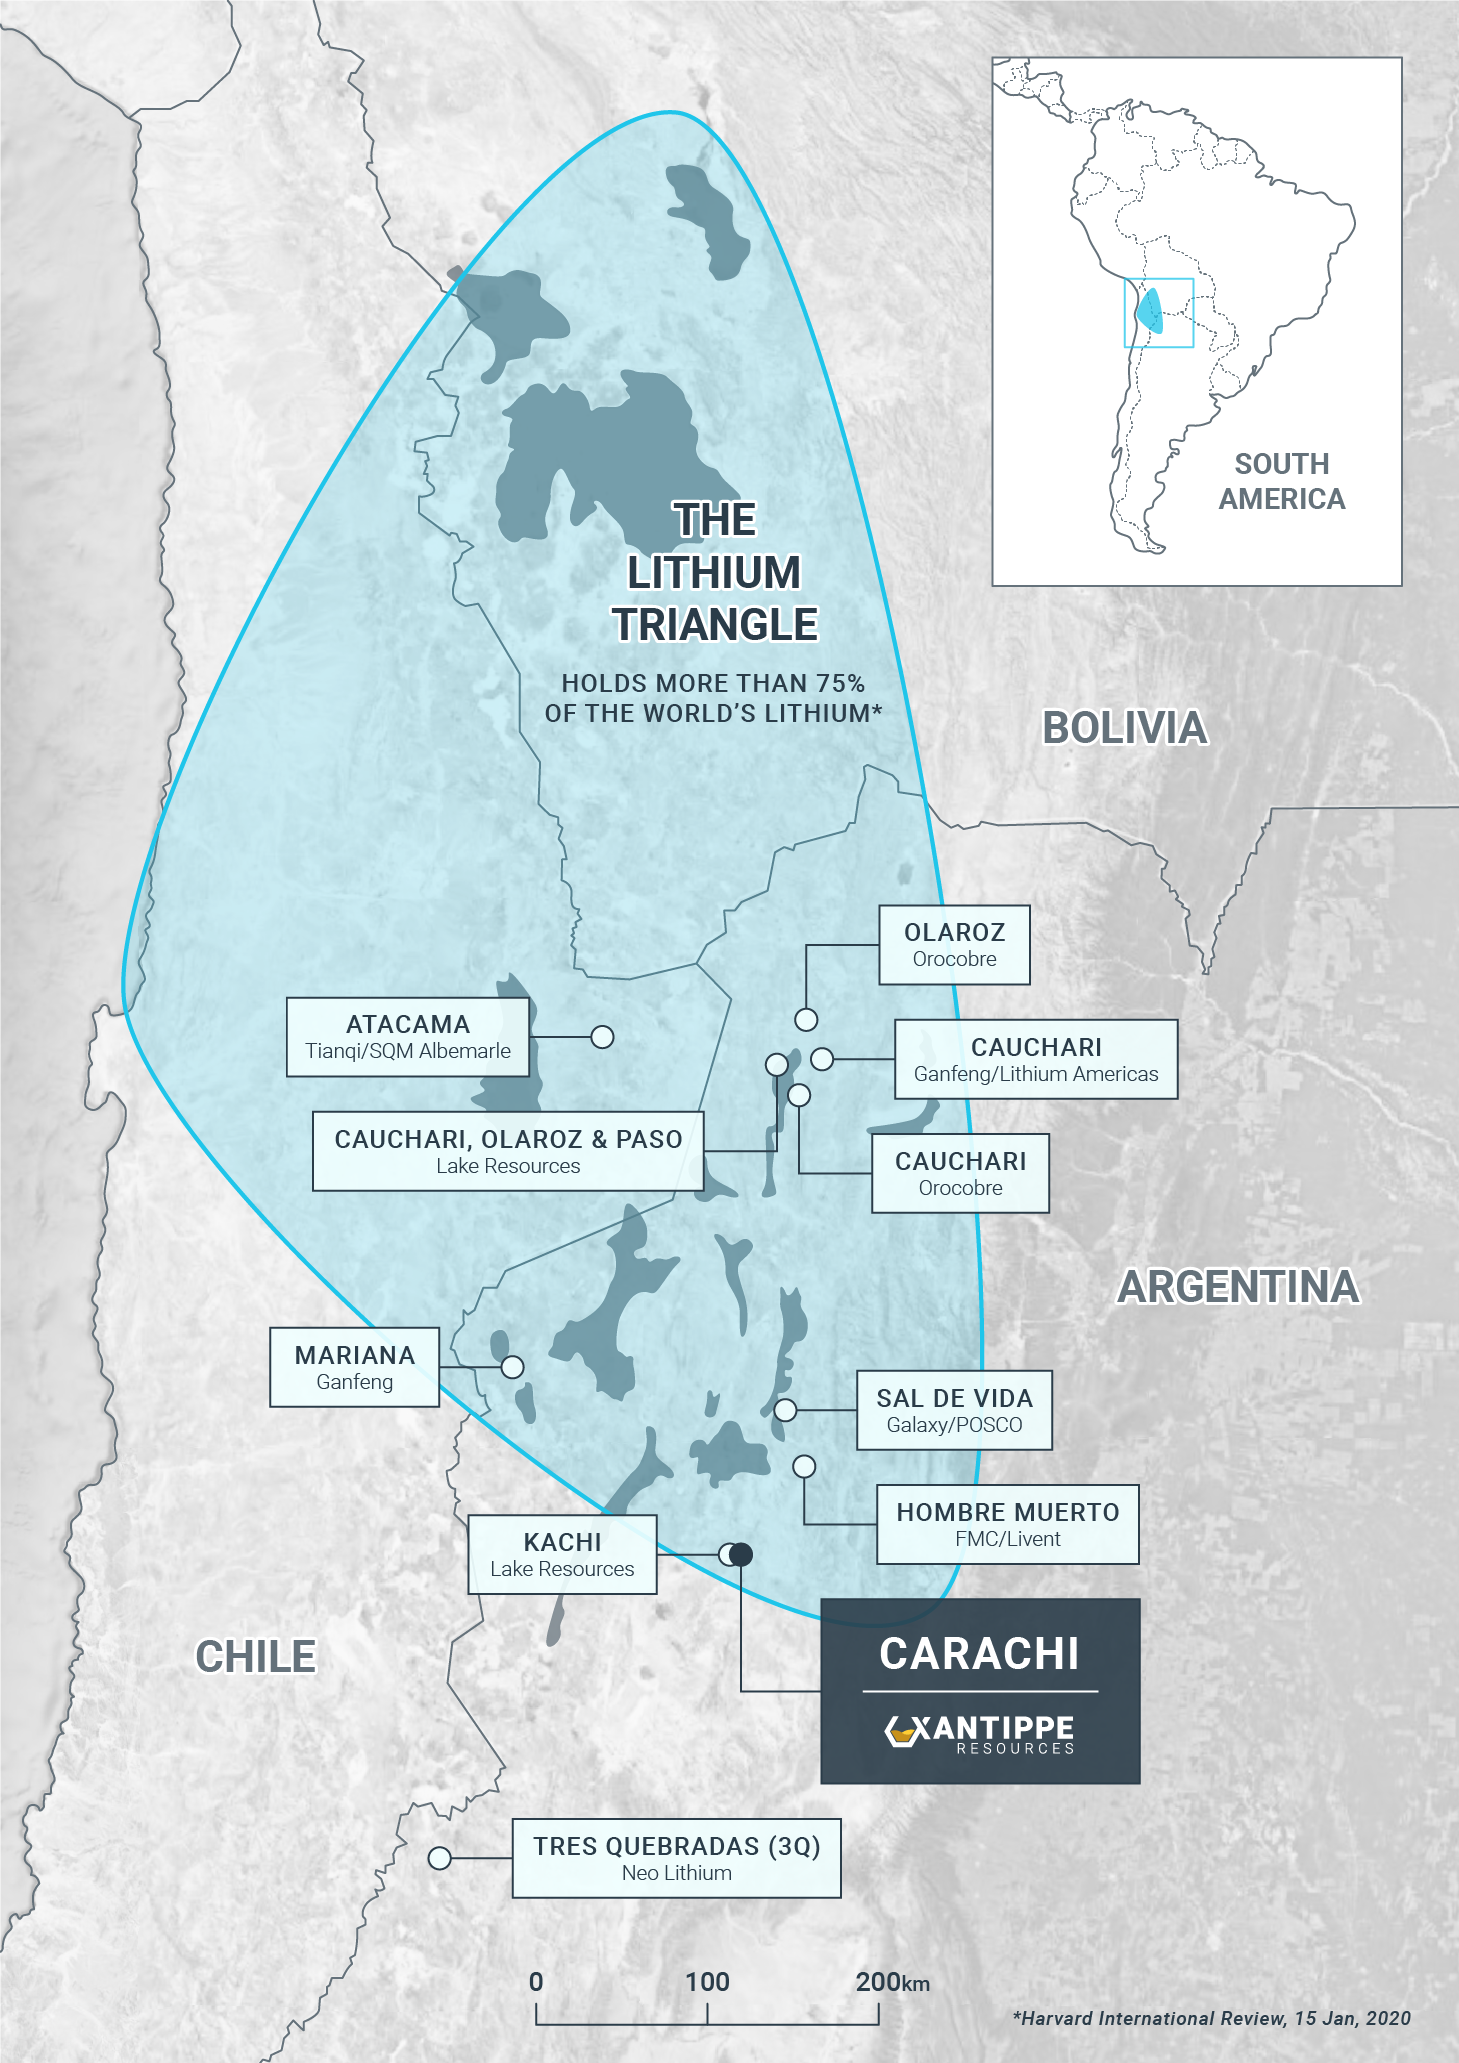 Carachi Lithium Project, Argentina